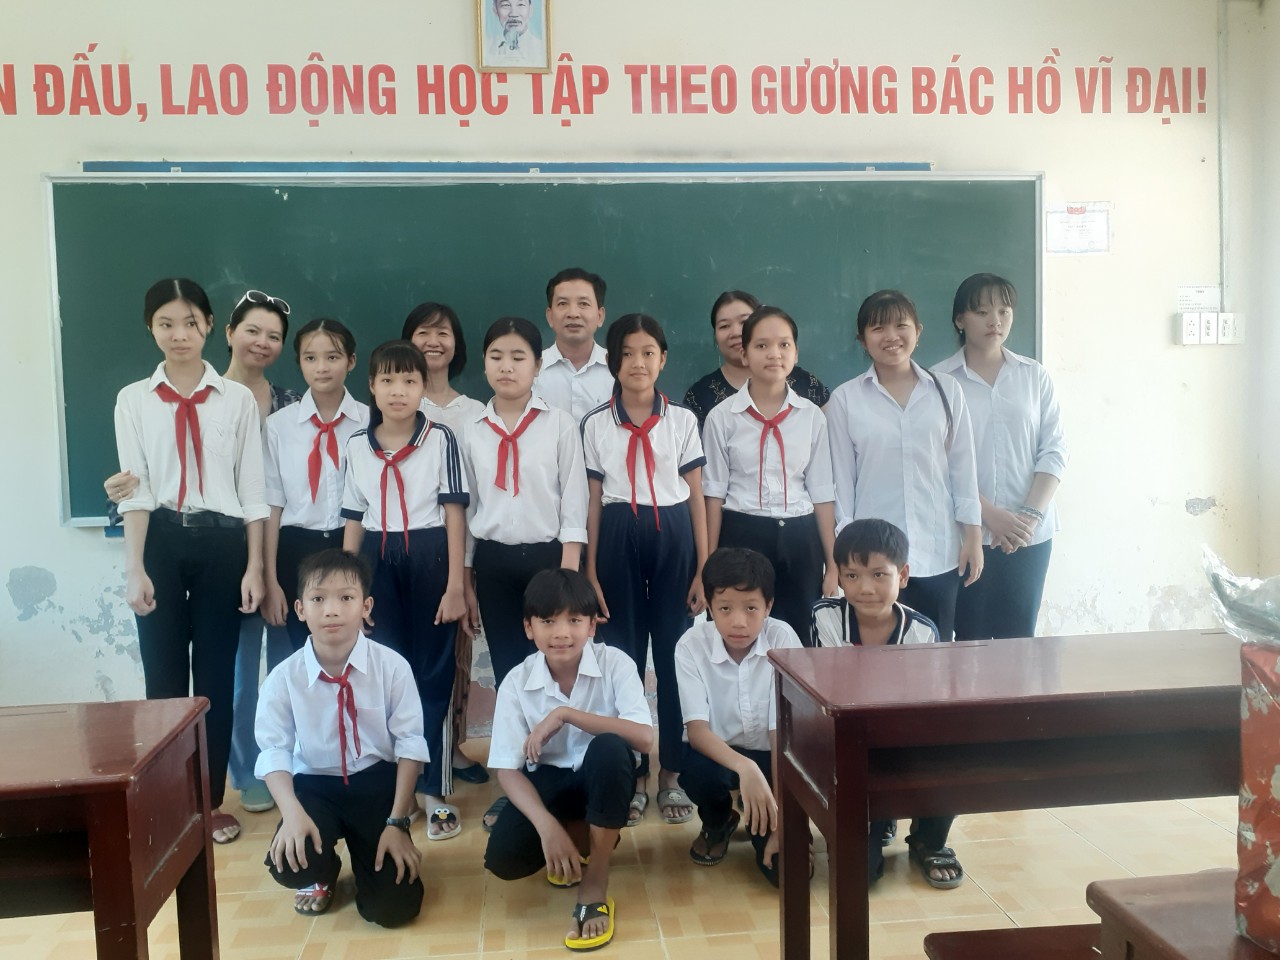 Ông Nguyễn Văn Nhân - Chủ tịch Liên hiệp Hậu Giang cùng bà Lê Thị Kim Ngân - Đồng sáng lập Tổ chức Thạnh Lộc trao học bổng cho học sinh nghèo.